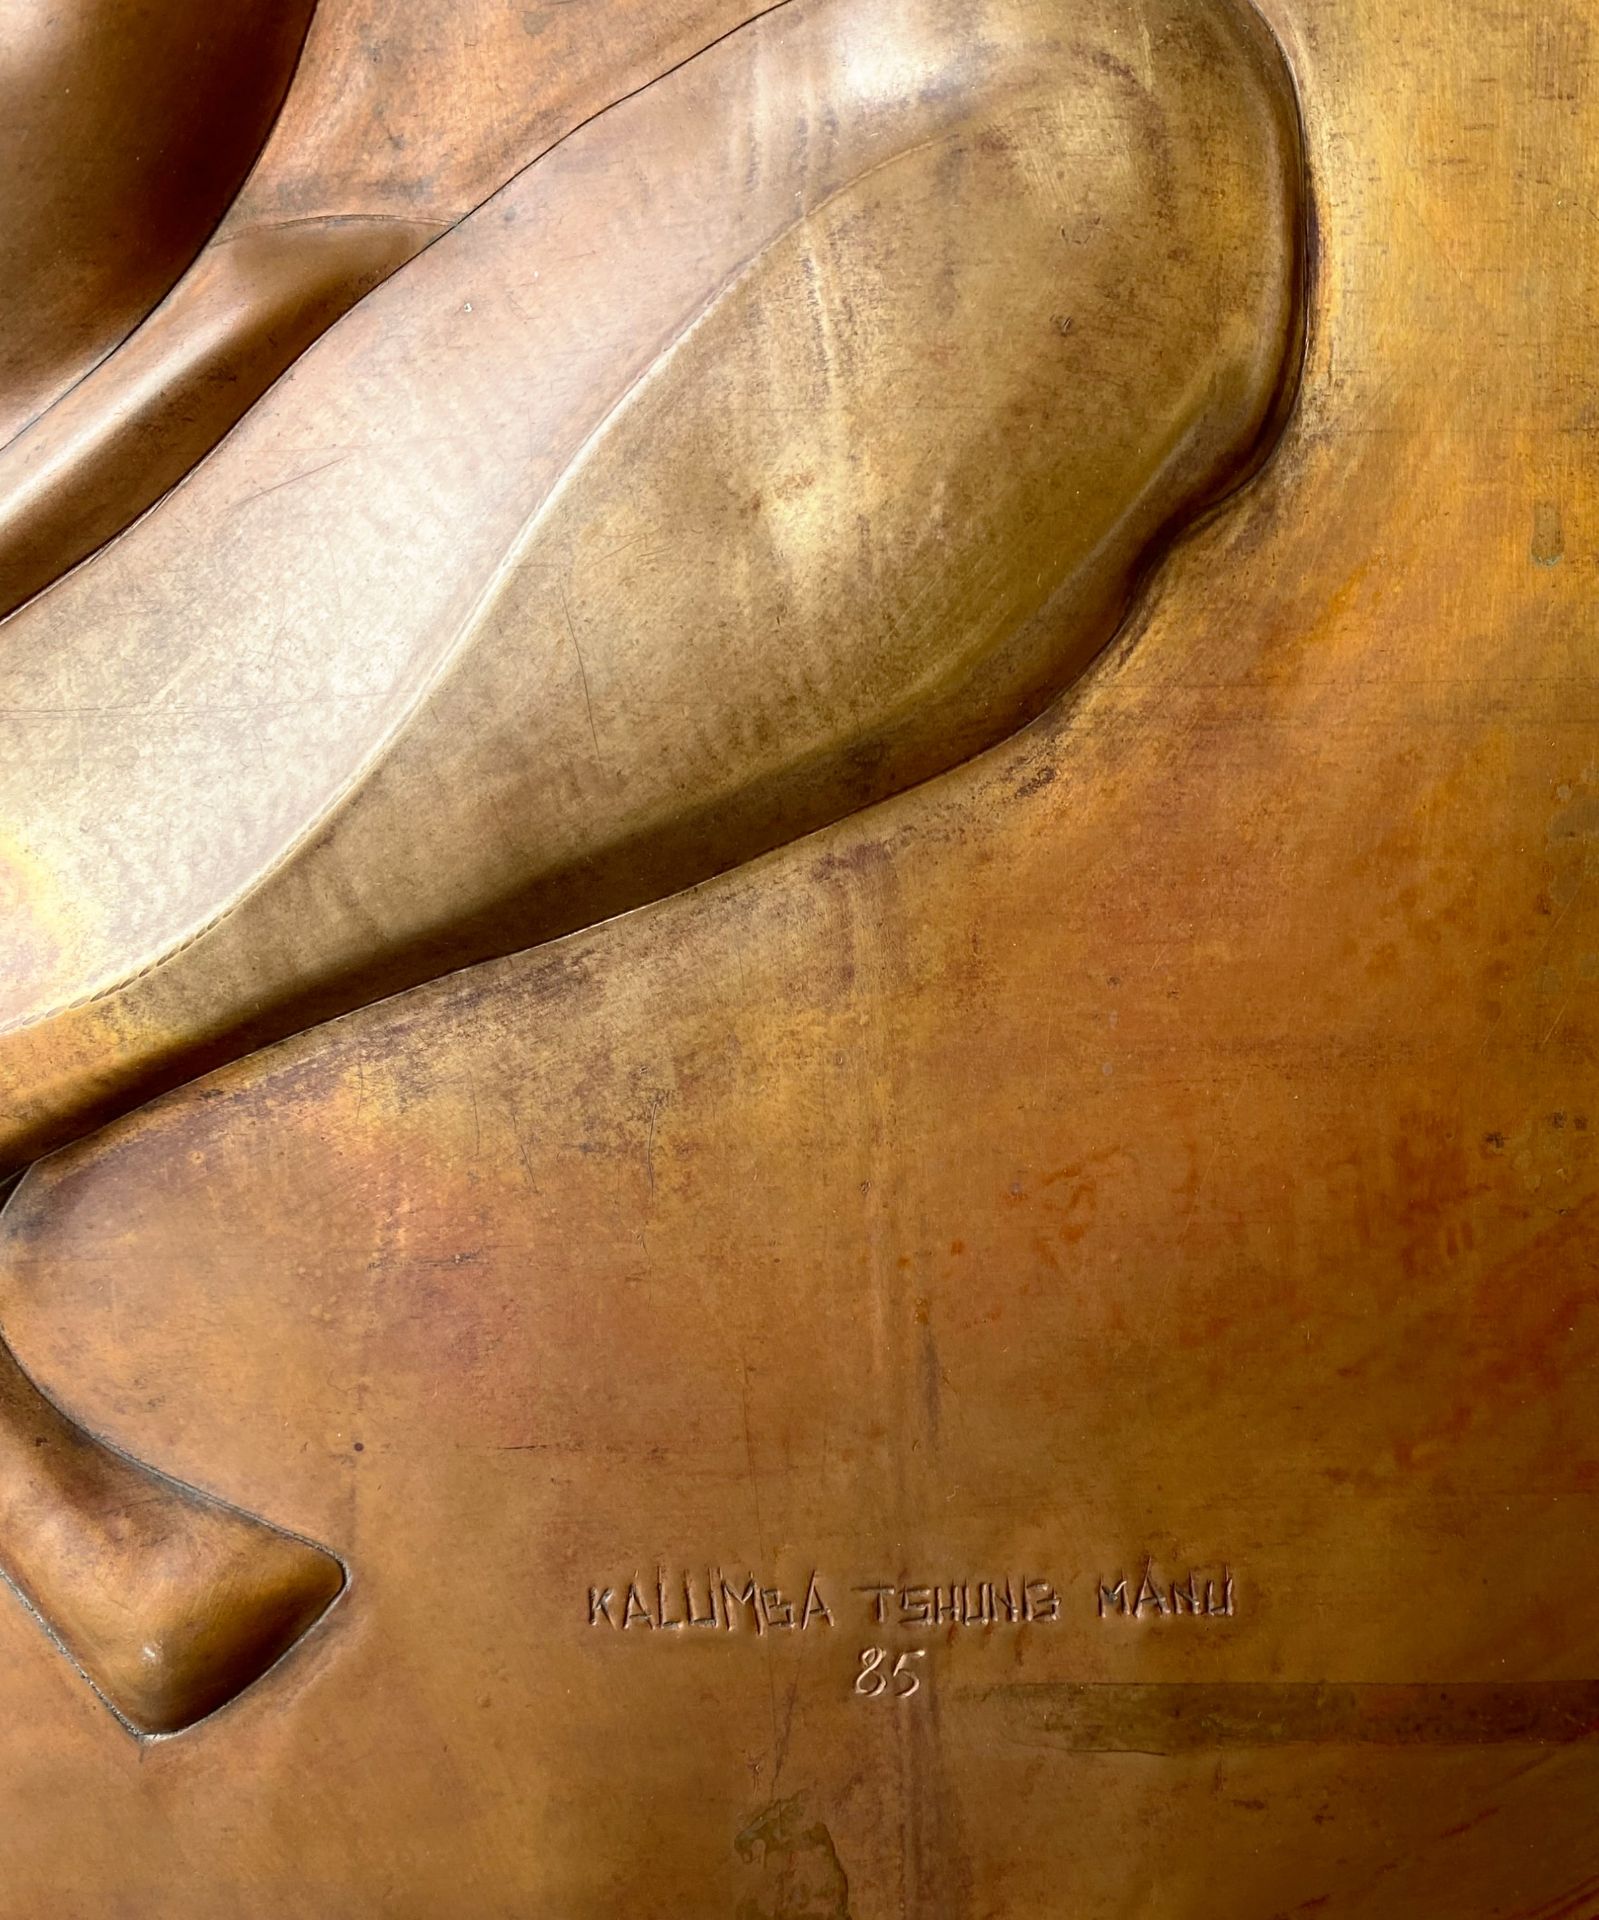 Tableau plaque cuivre 'La Fertilité' gravé Kalumba Tshung Manu - Bild 2 aus 2